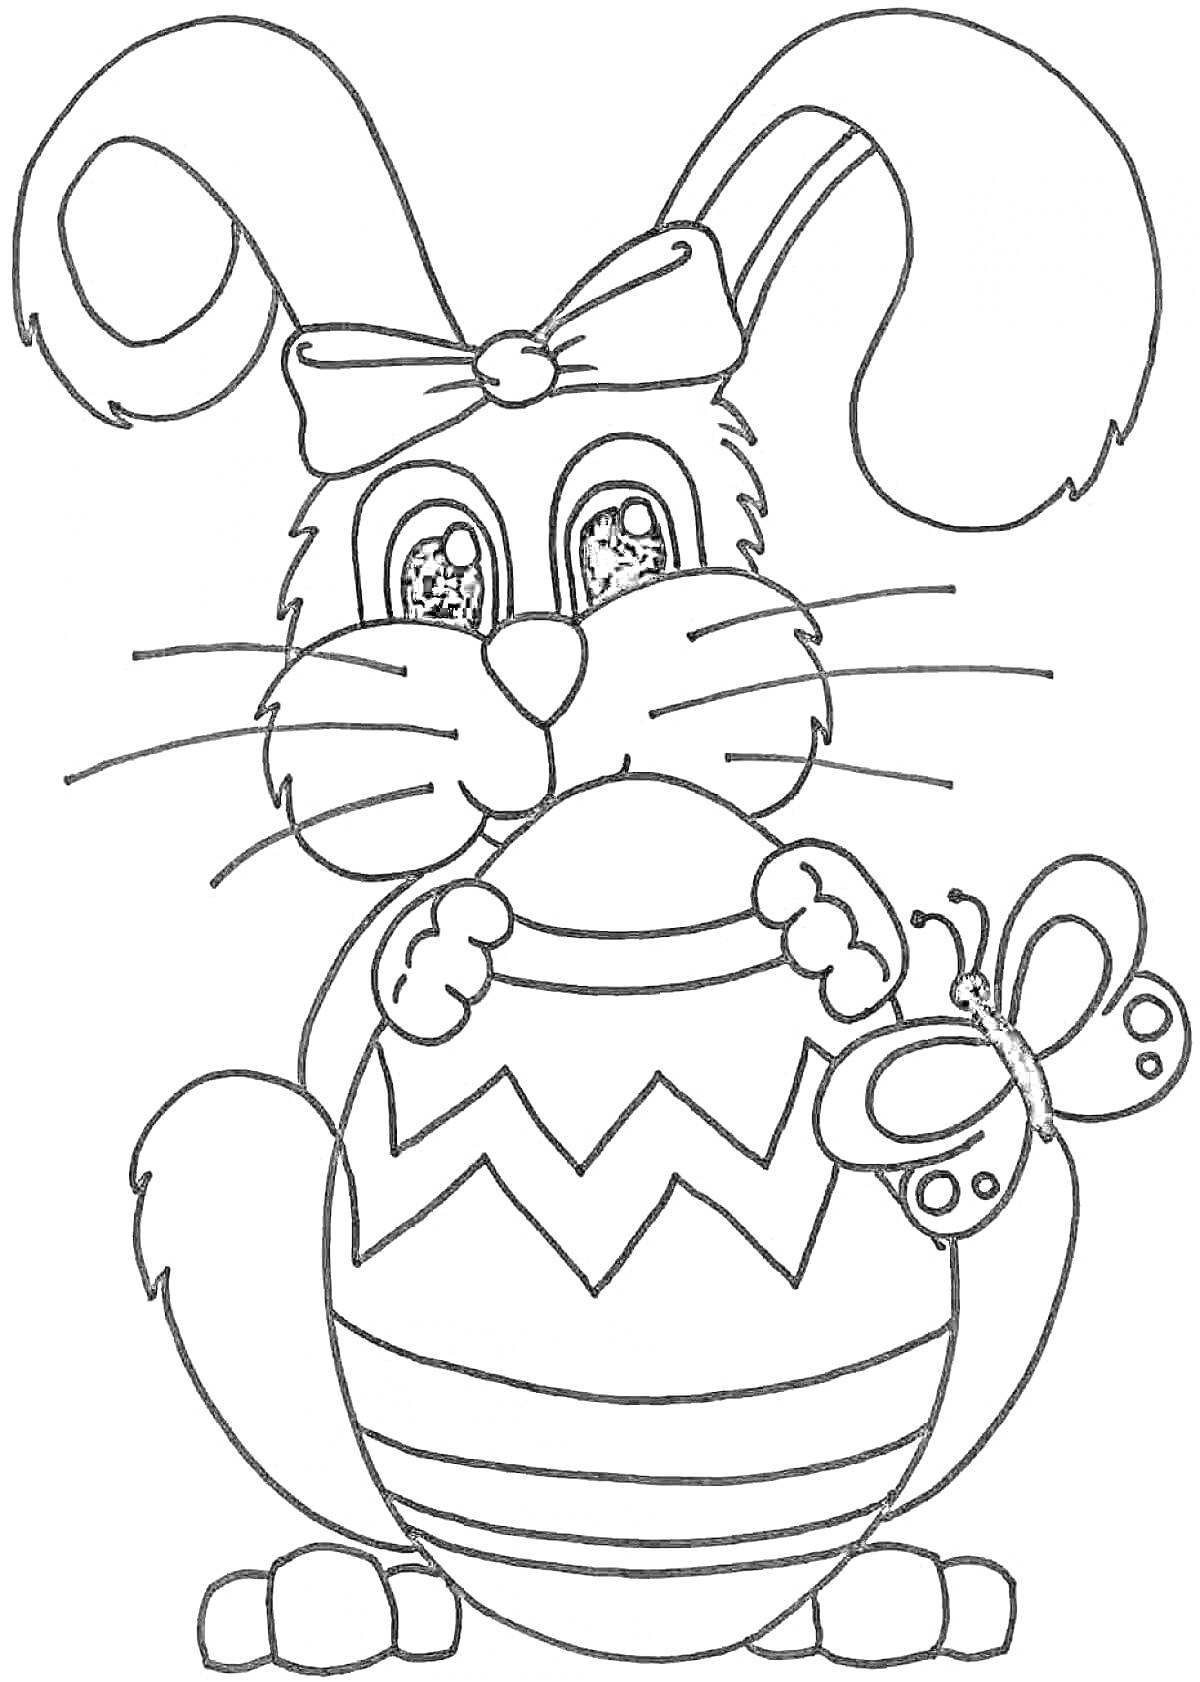 Раскраска новогодний кролик с бантом, держащий яйцо с зигзагами и бабочкой